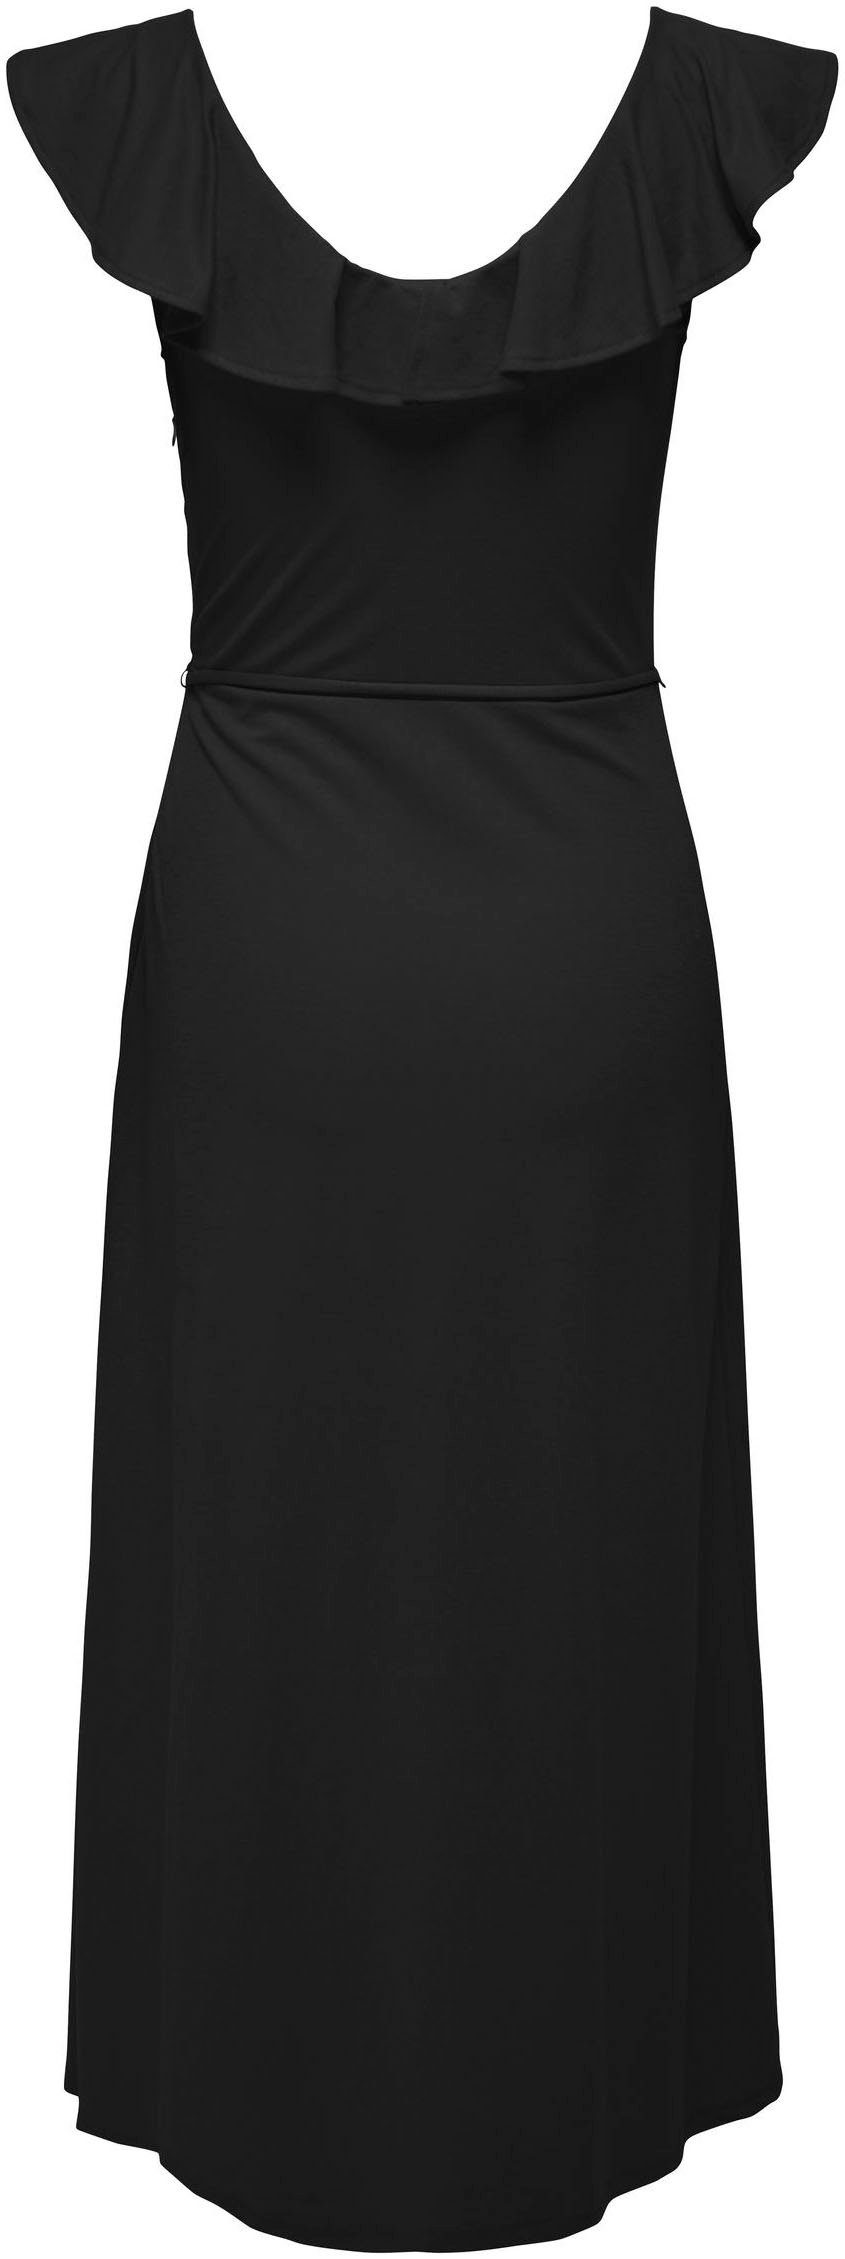 ONLJANY FRILL Black ONLY S/L Sommerkleid JRS DRESS